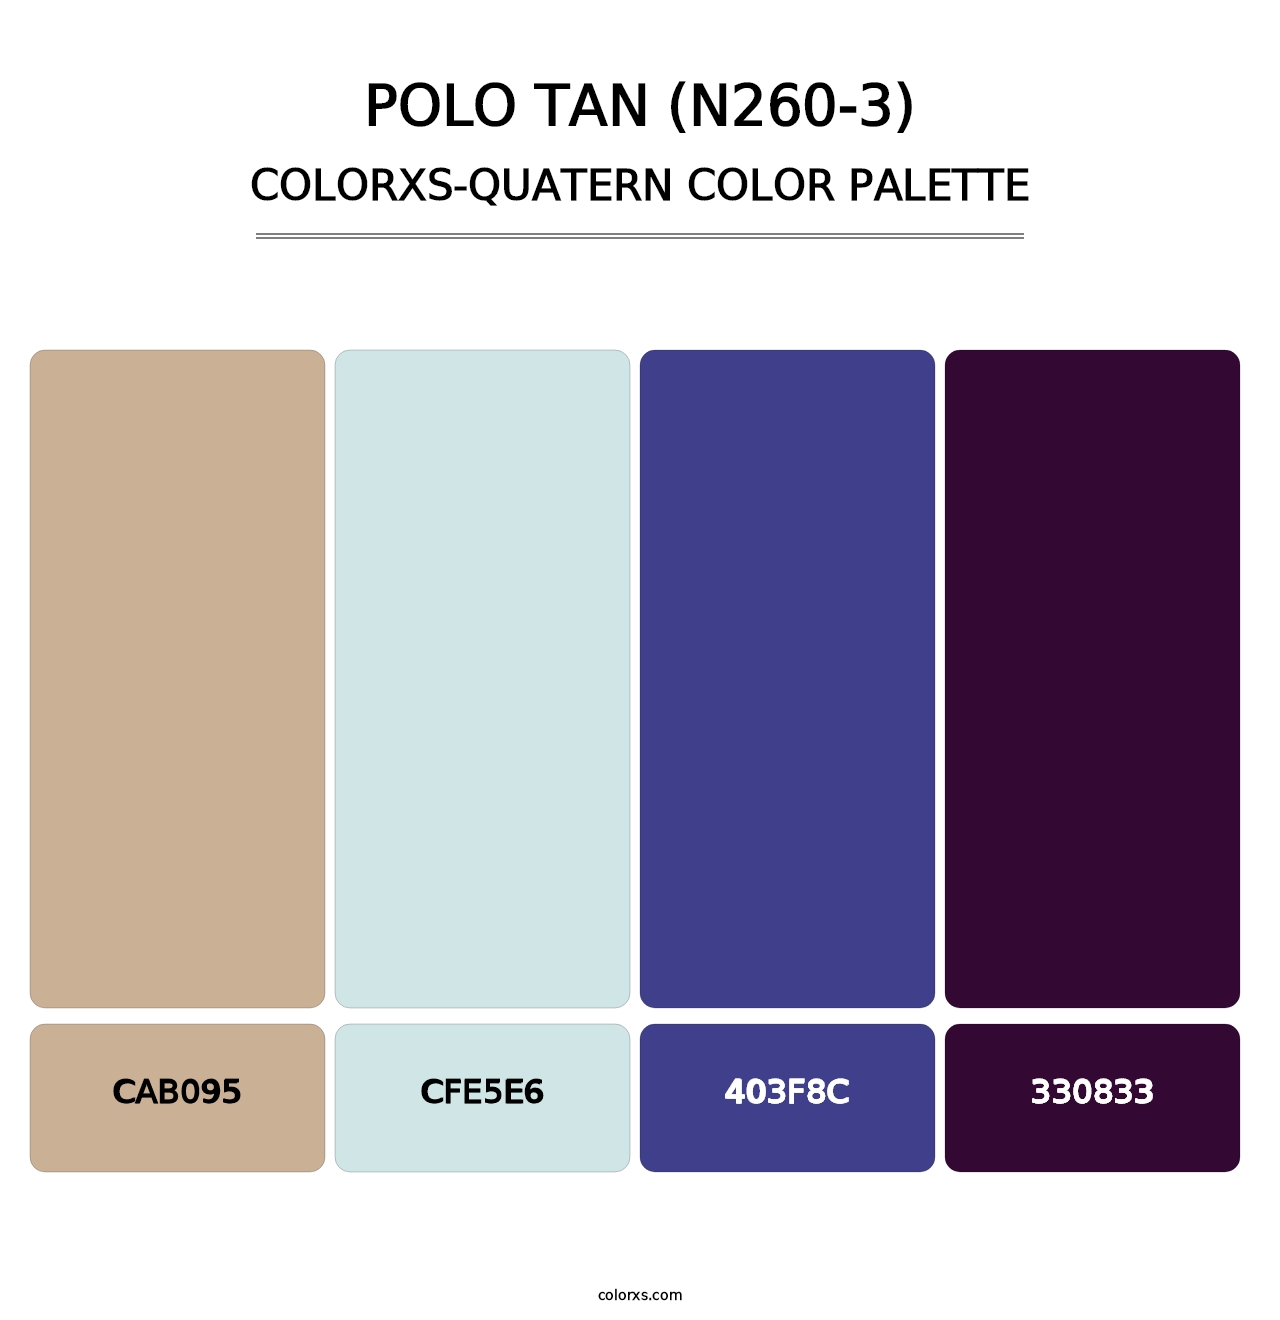 Polo Tan (N260-3) - Colorxs Quatern Palette